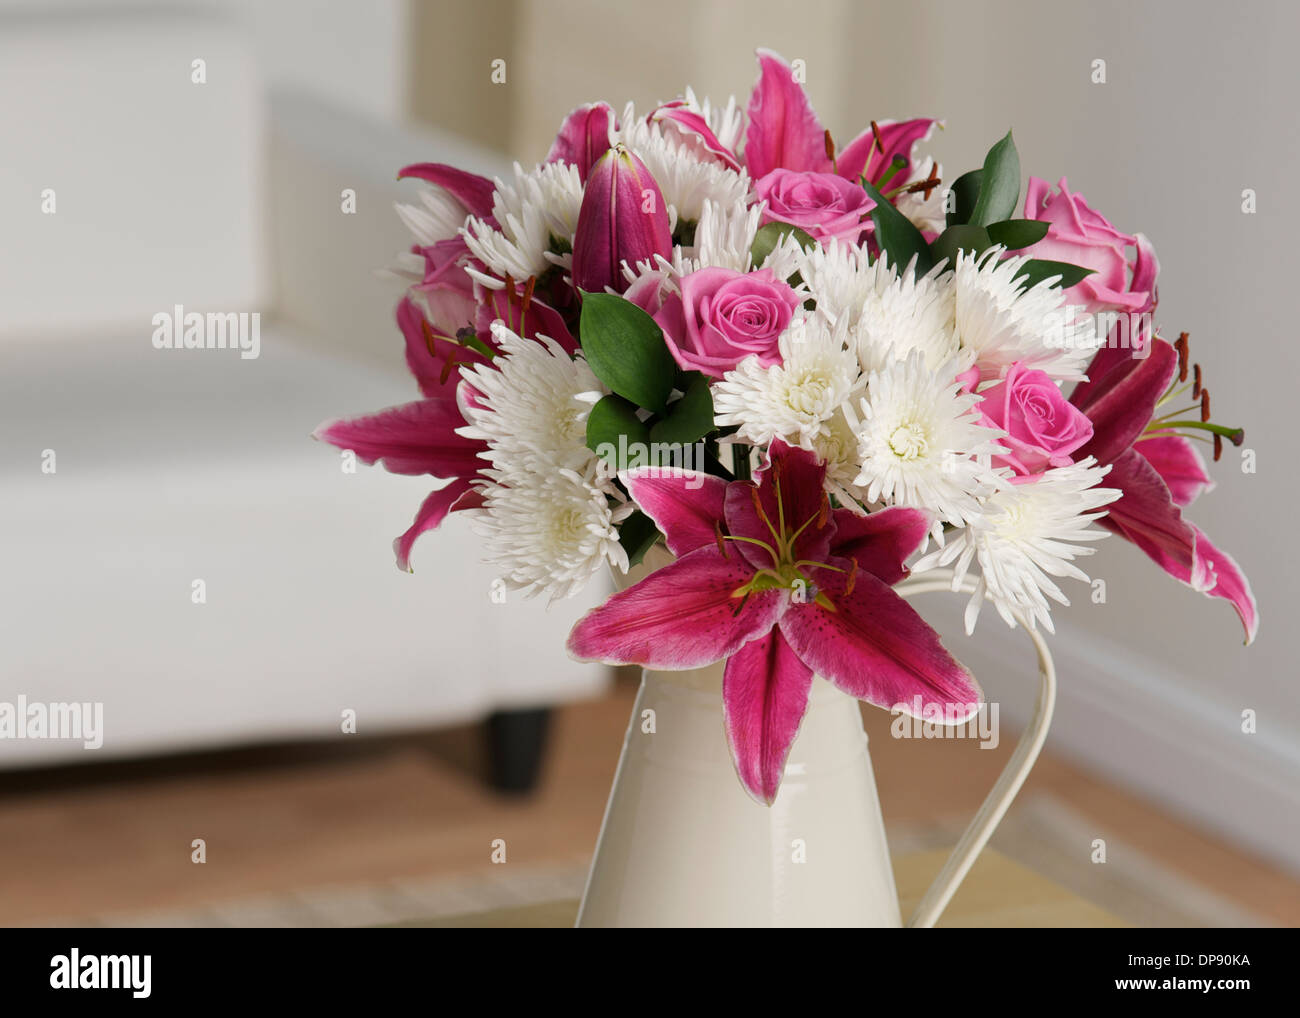 Vase de fleurs roses et blanches dans un décor de chambre blanc Banque D'Images